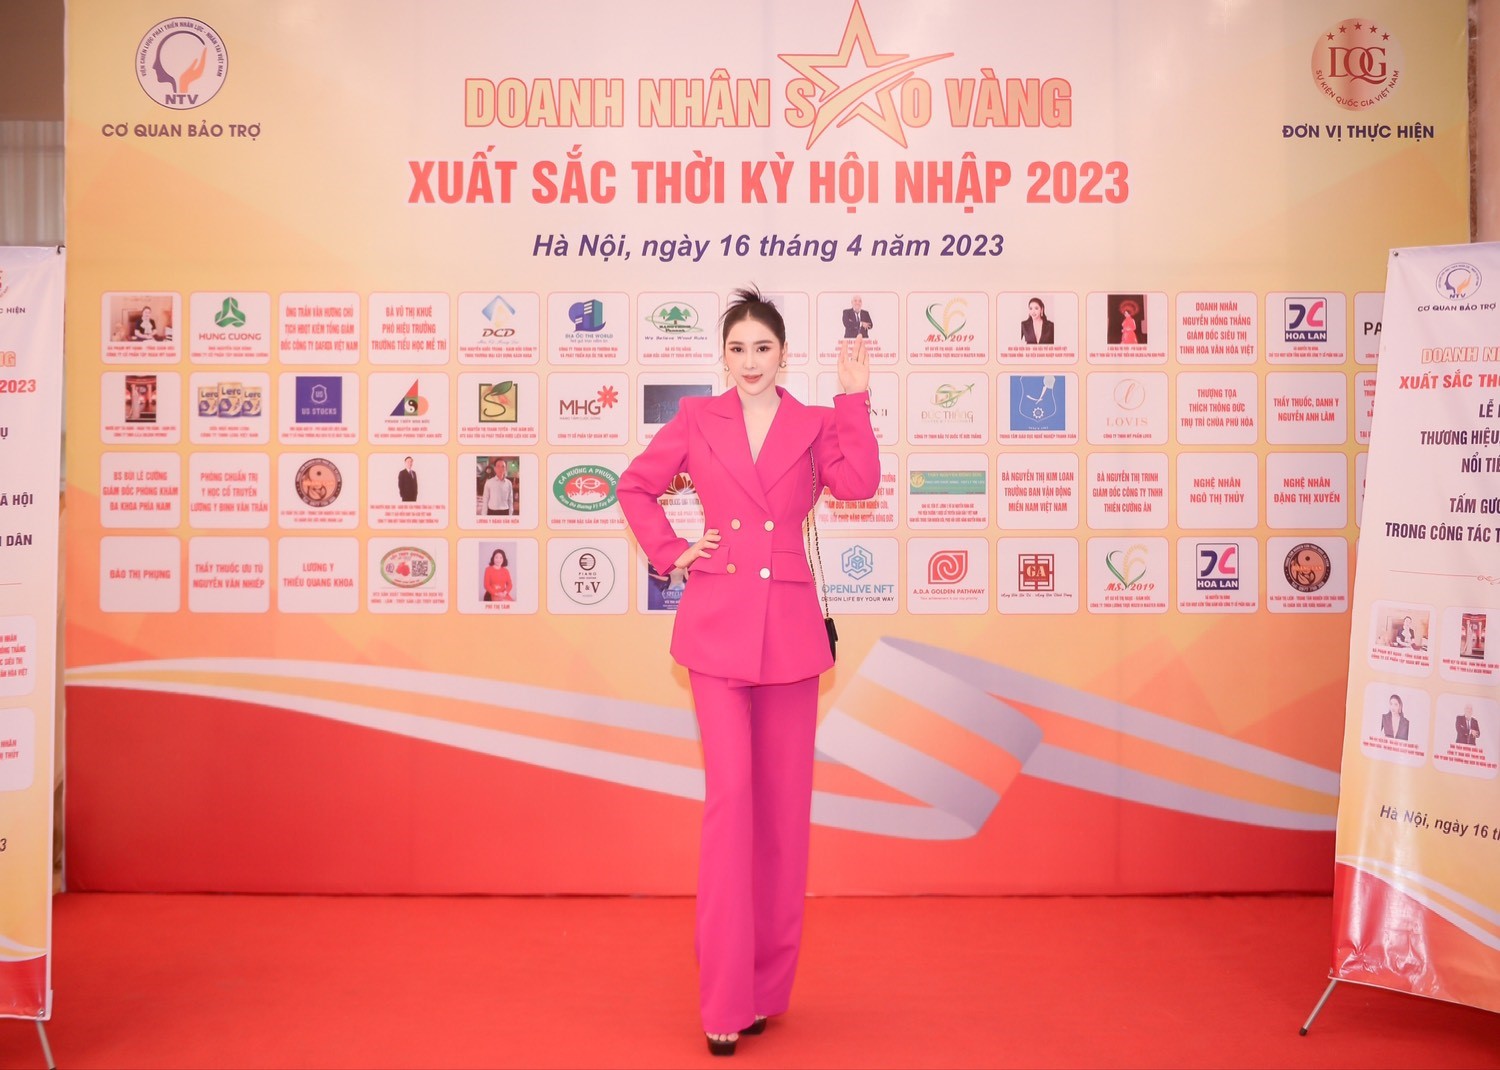 Hoa hậu Trịnh Thanh Hồng - Bà chủ H-Harry Perfume được vinh danh “Doanh nhân Sao Vàng 2023” - ảnh 5